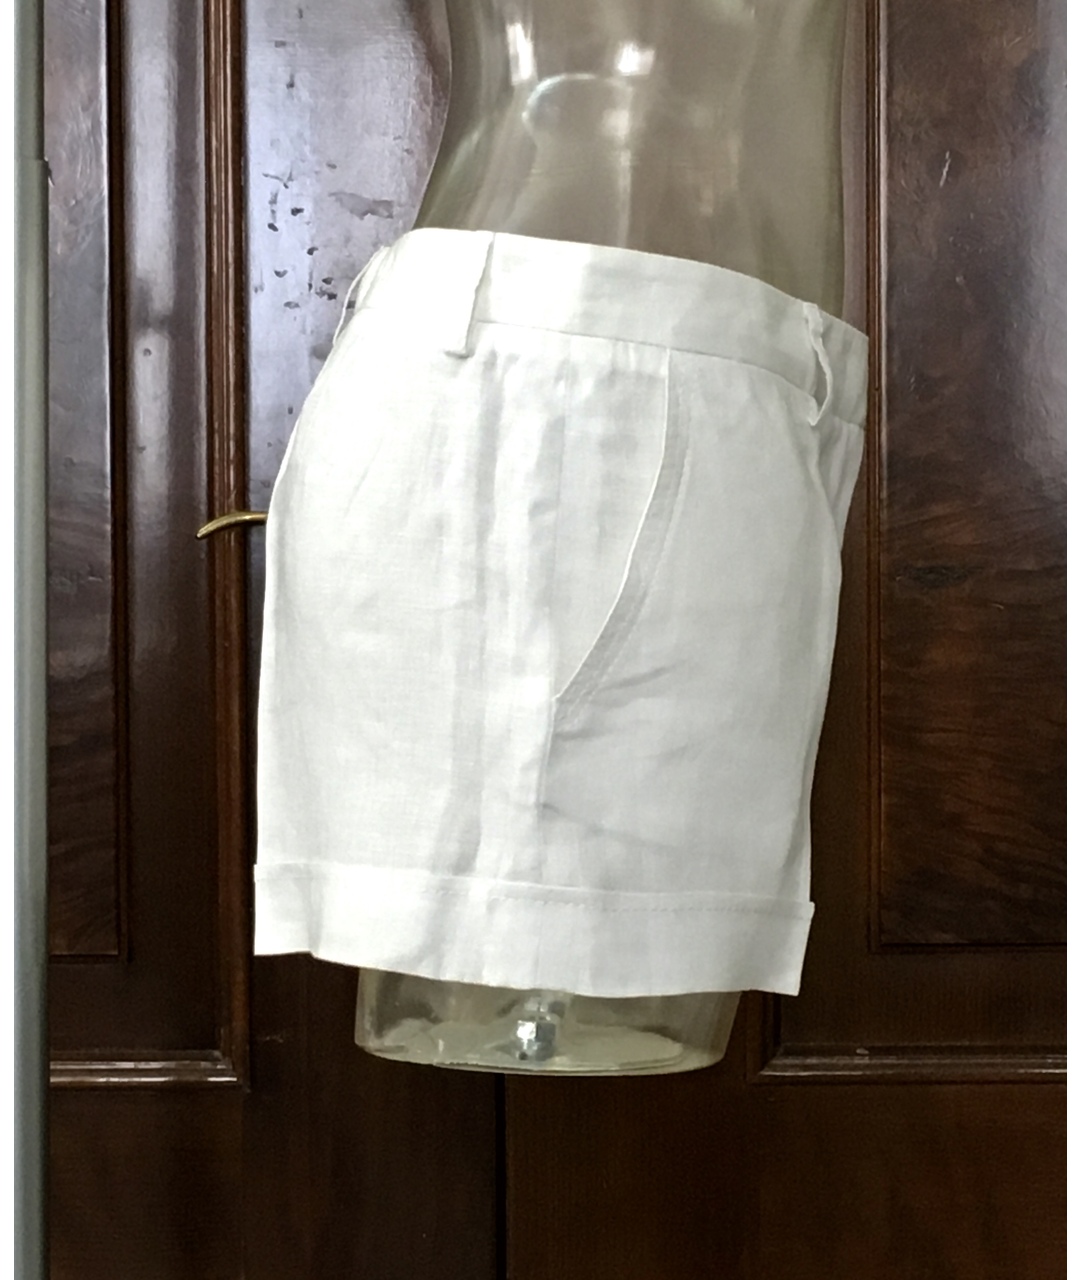 BILANCIONI Белые льняные шорты, фото 4